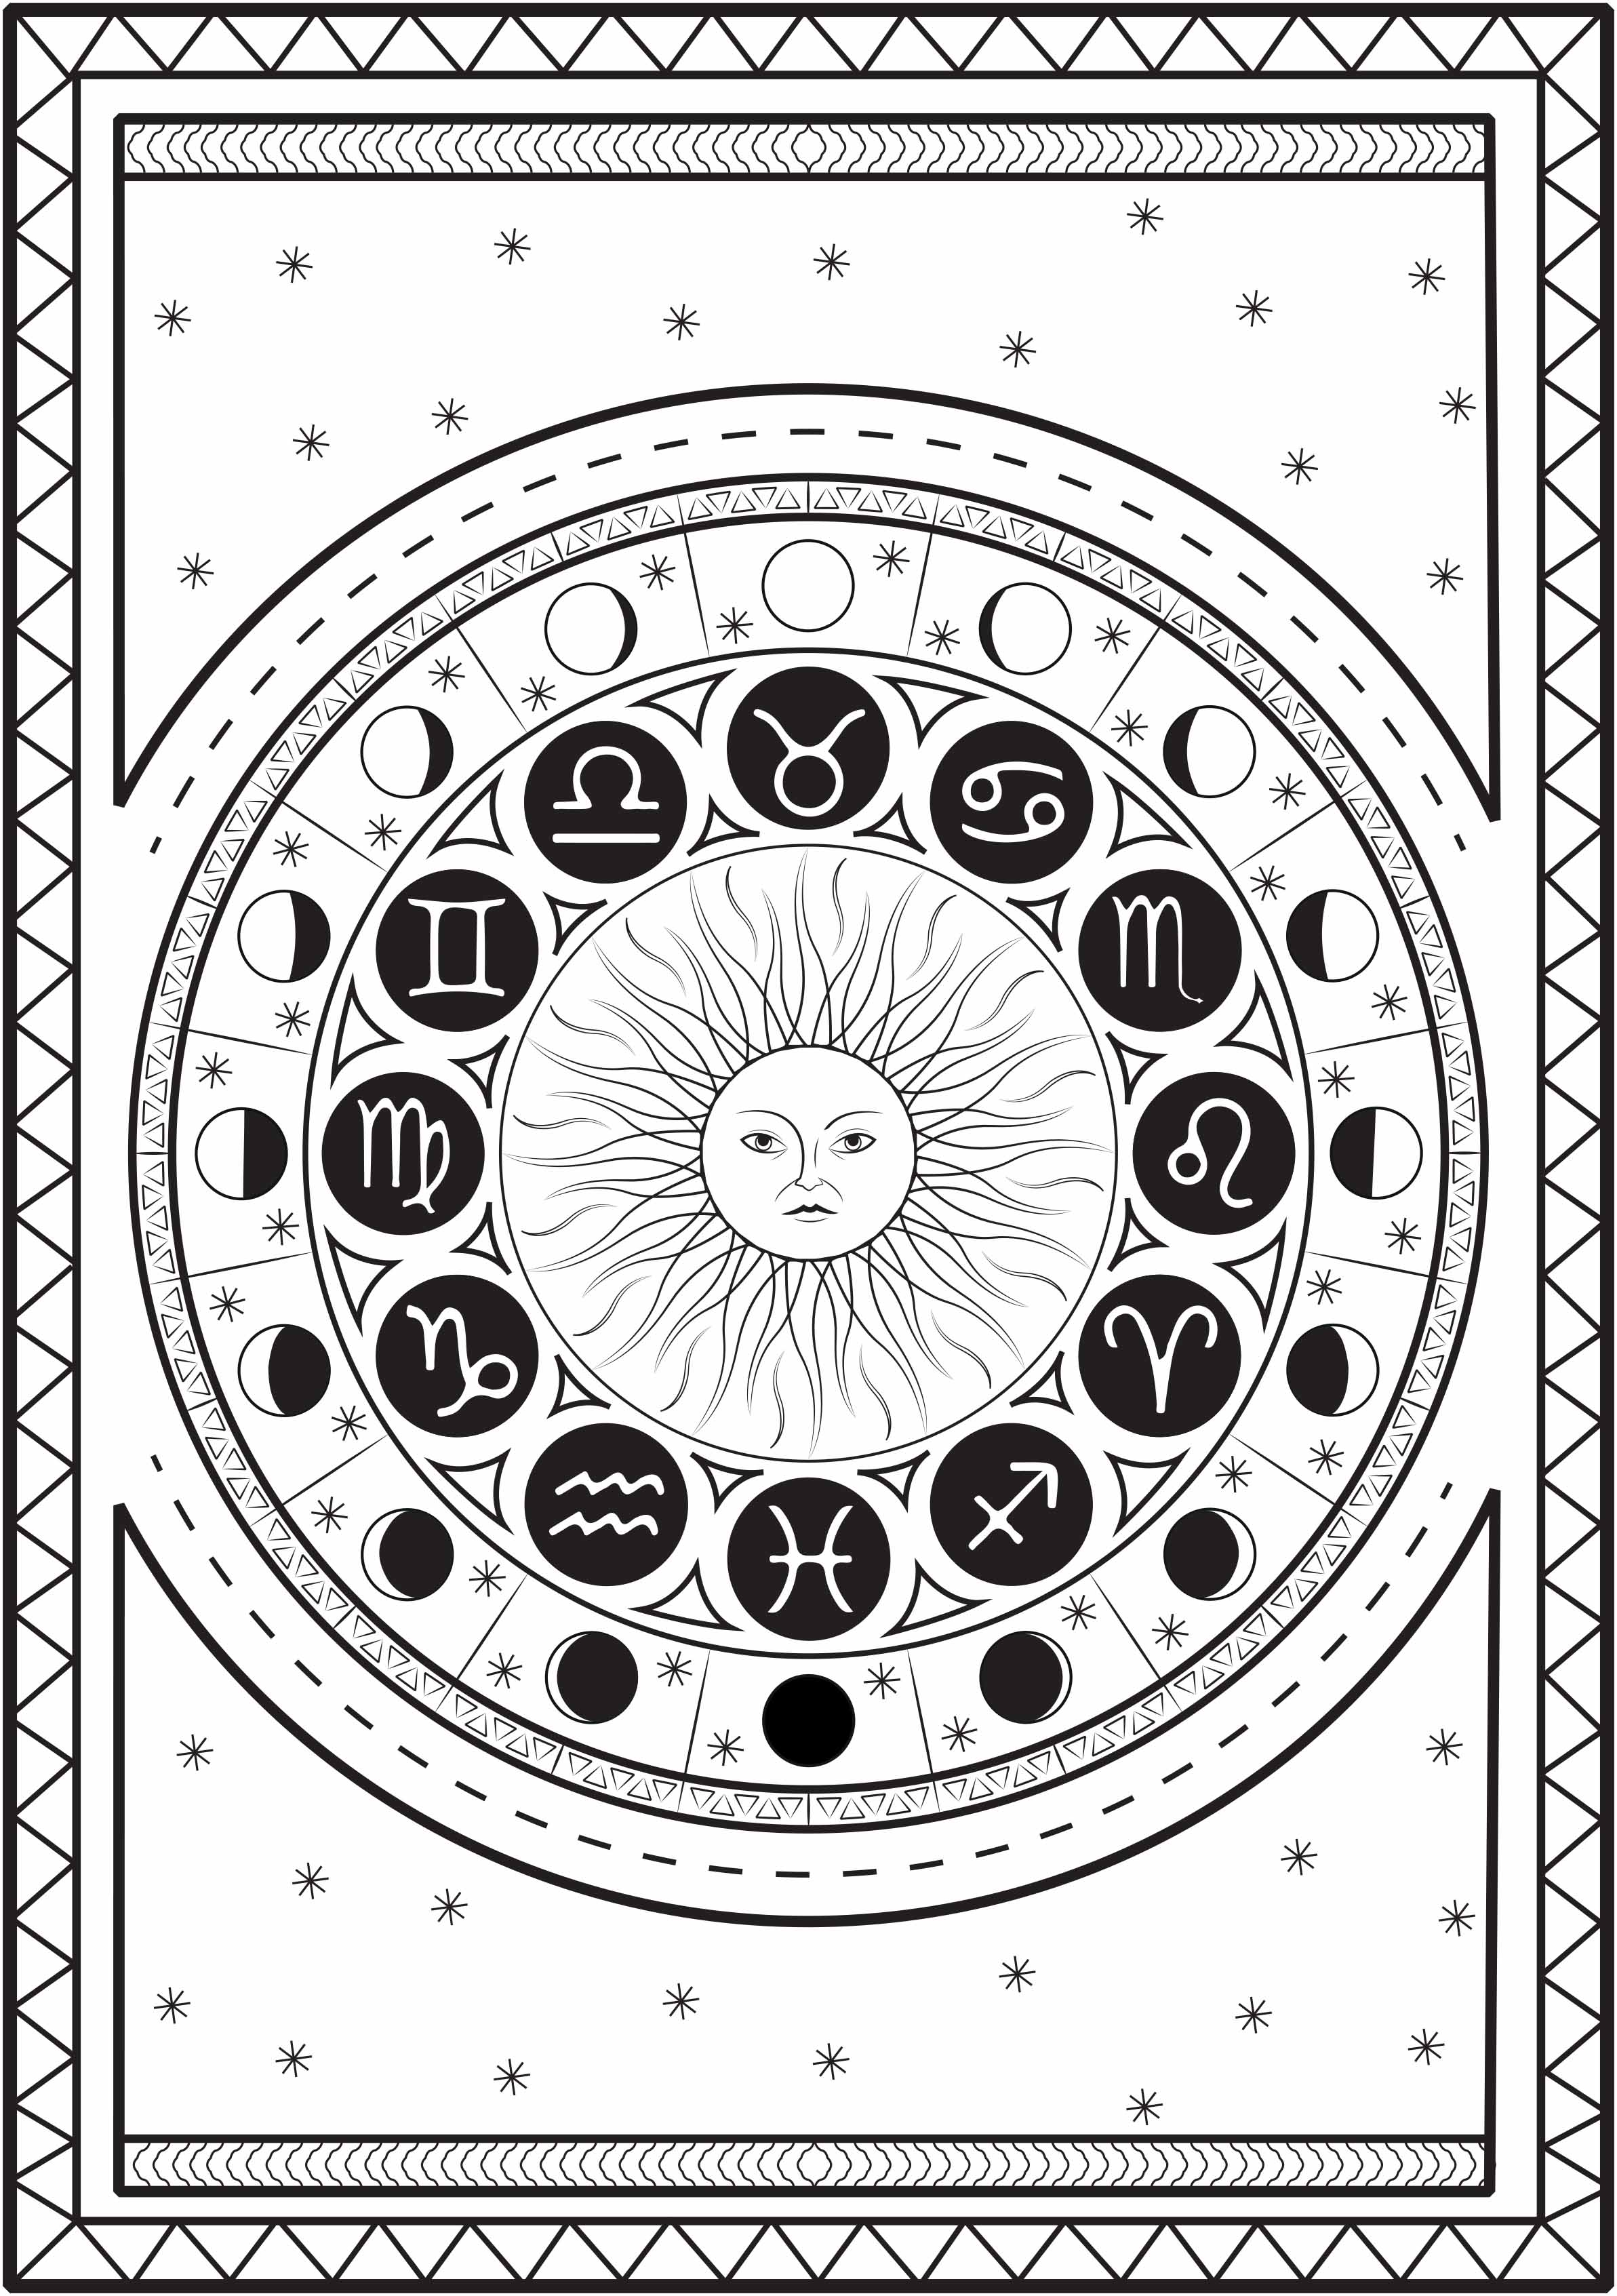 Mandala compuesto por signos astrológicos alrededor de un sol, con el ciclo lunar, sobre un fondo estrellado, Artista : Louise